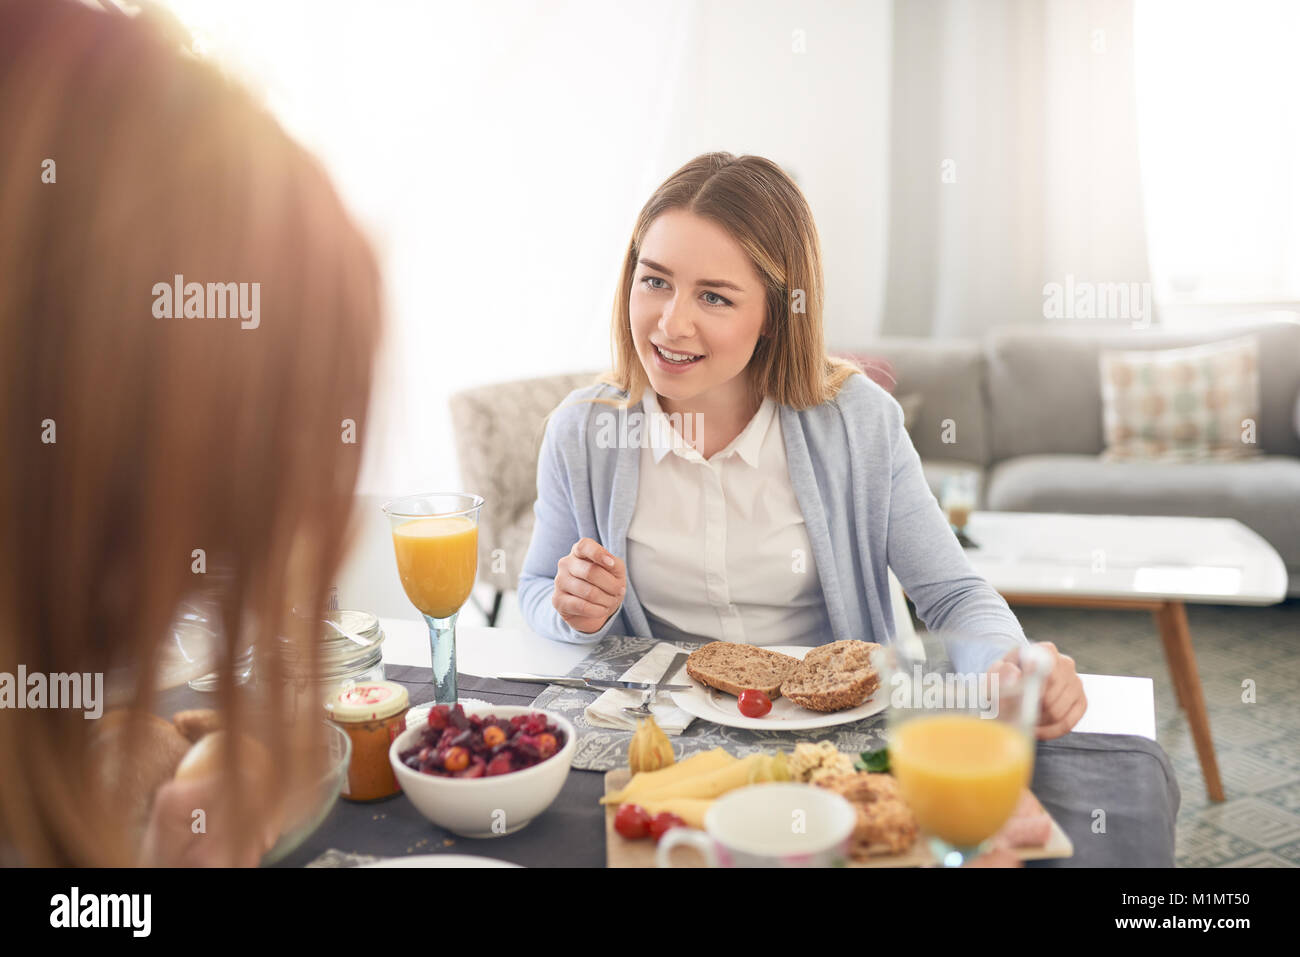 Attractive young woman sitting écoute attentivement sa mère comme ils bénéficient du temps de qualité ensemble plus d'un copieux petit-déjeuner dans un s Banque D'Images